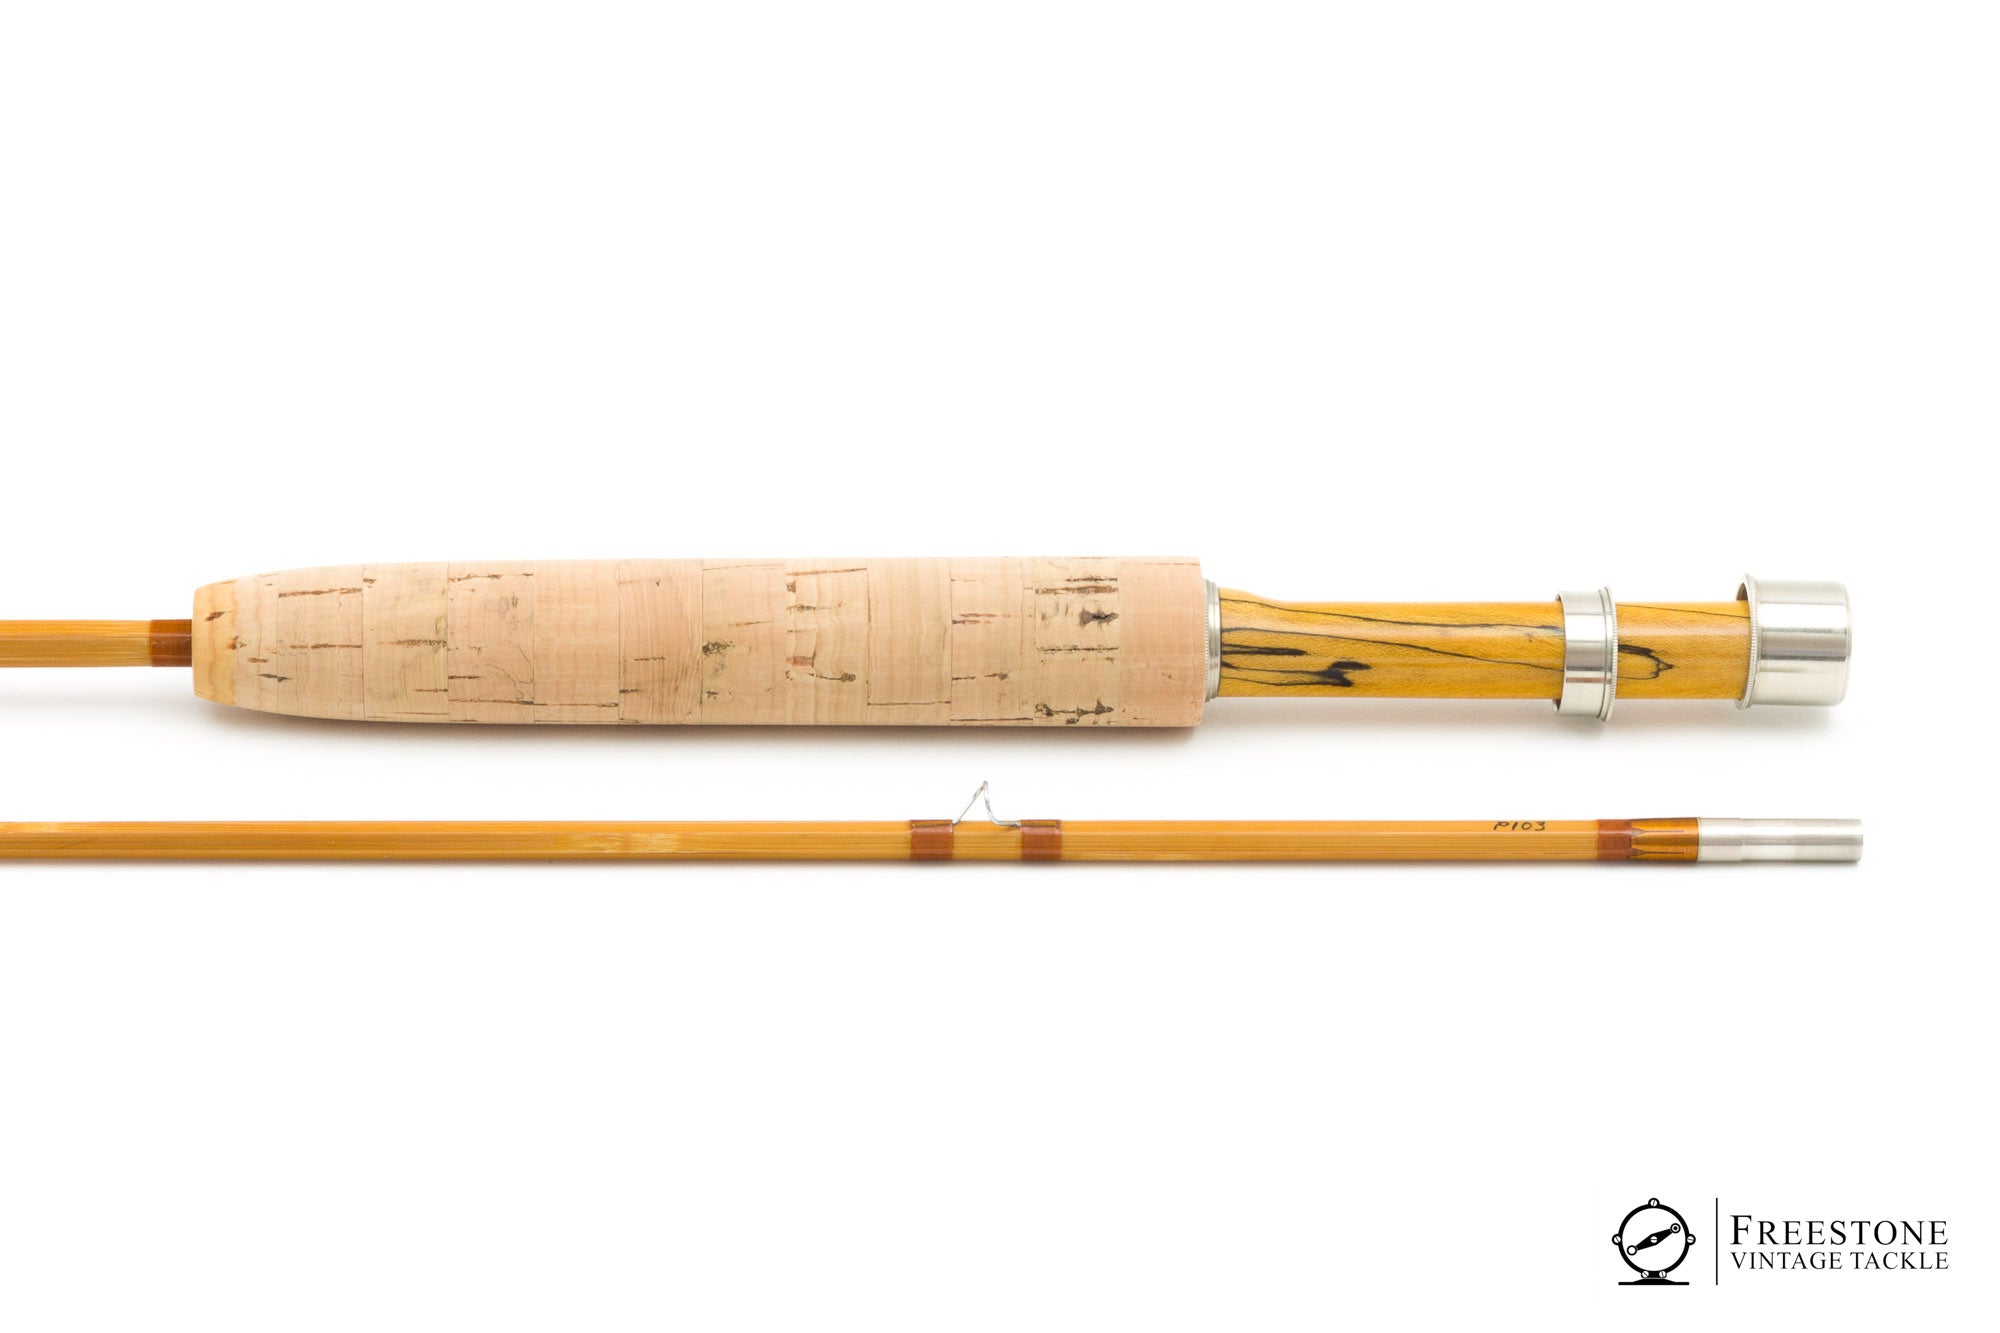 Raine, Chris - 8' 5wt 2/1 Classic (Payne 103) Bamboo Fly Rod